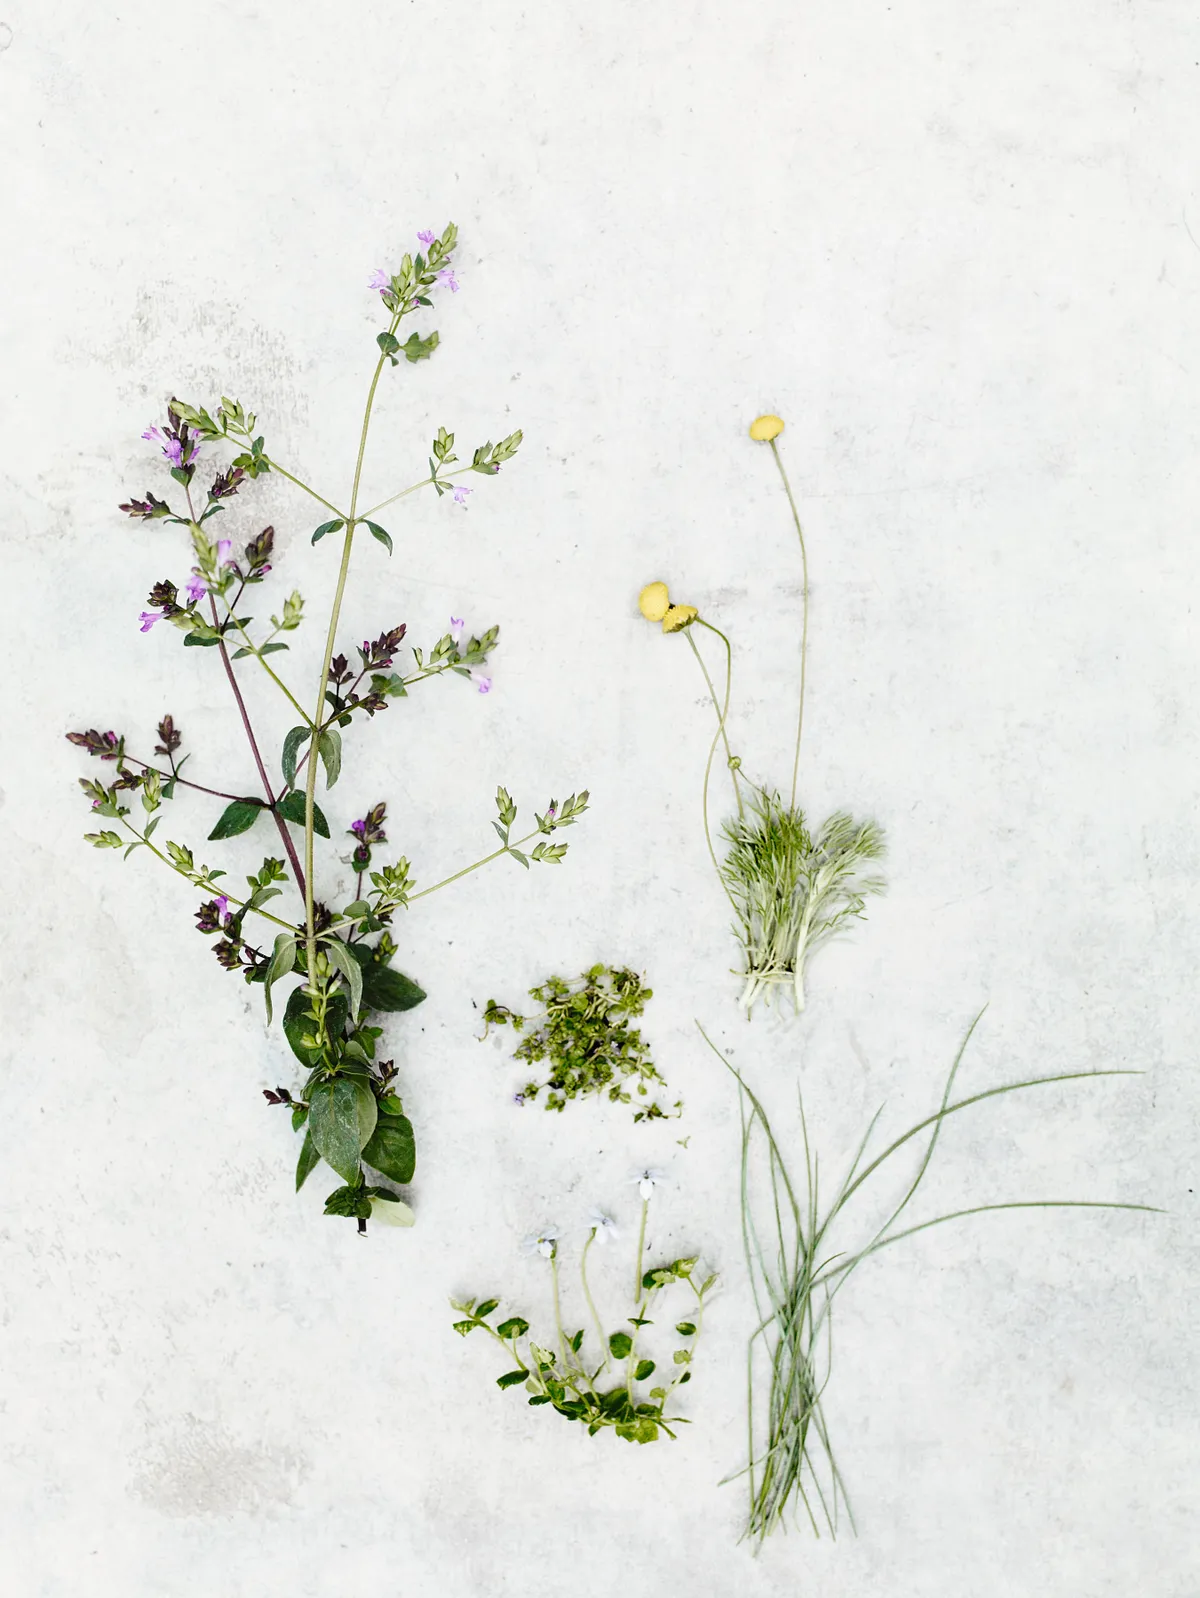 Origanum laevigatum ‘Hopleys’, Mentha requienii, Cotula hispida, Festuca glauca and Pratia pedunculata